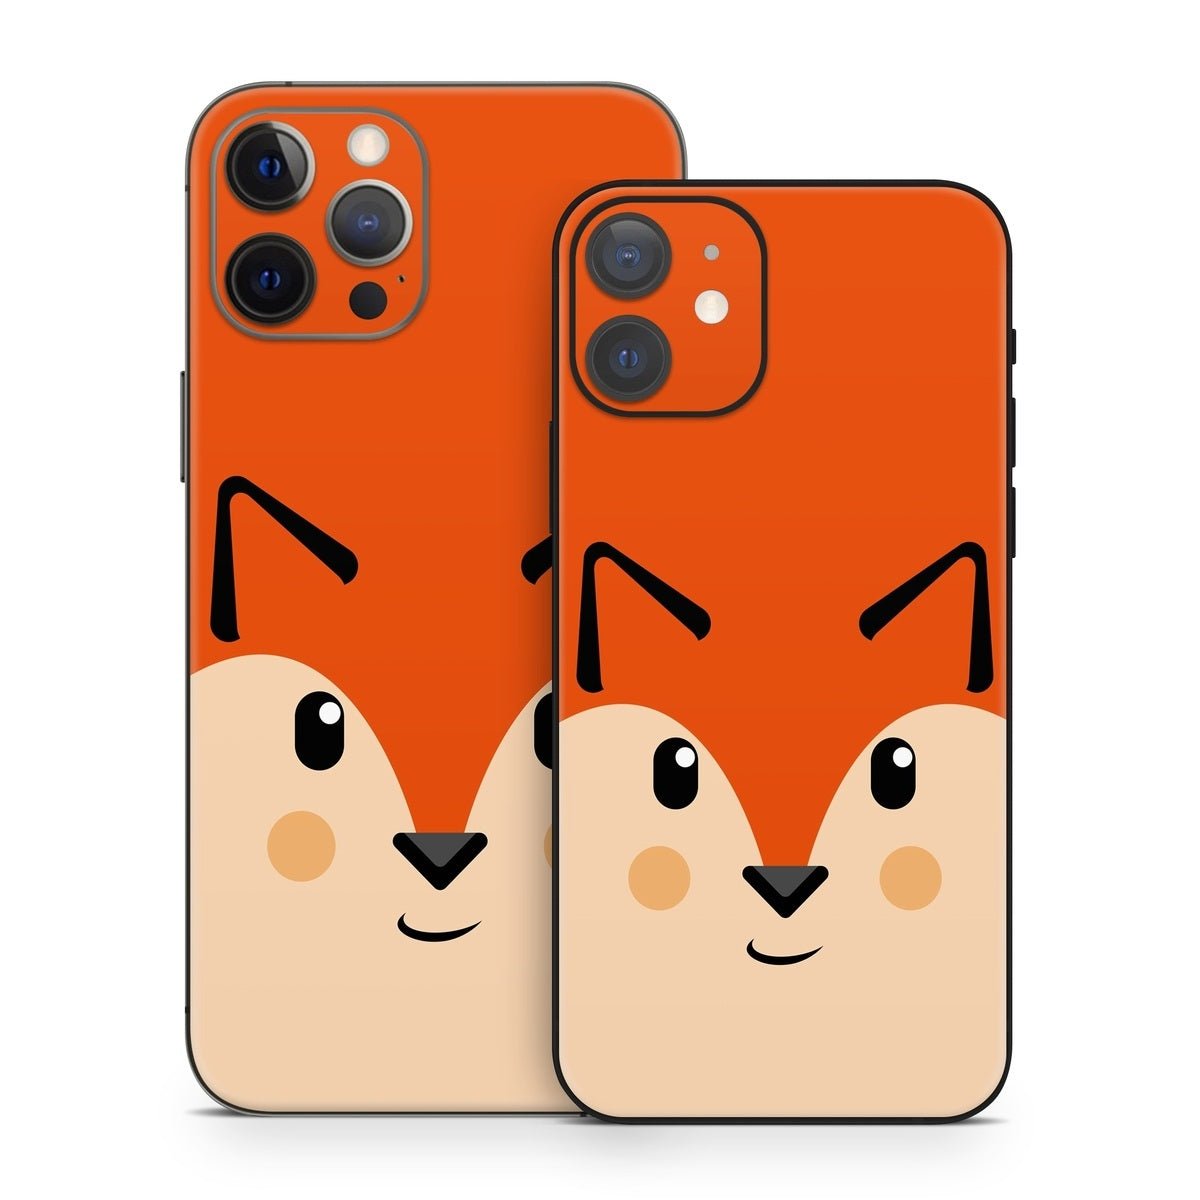 Autumn the Fox - Apple iPhone 12 Skin - The Zoo - DecalGirl